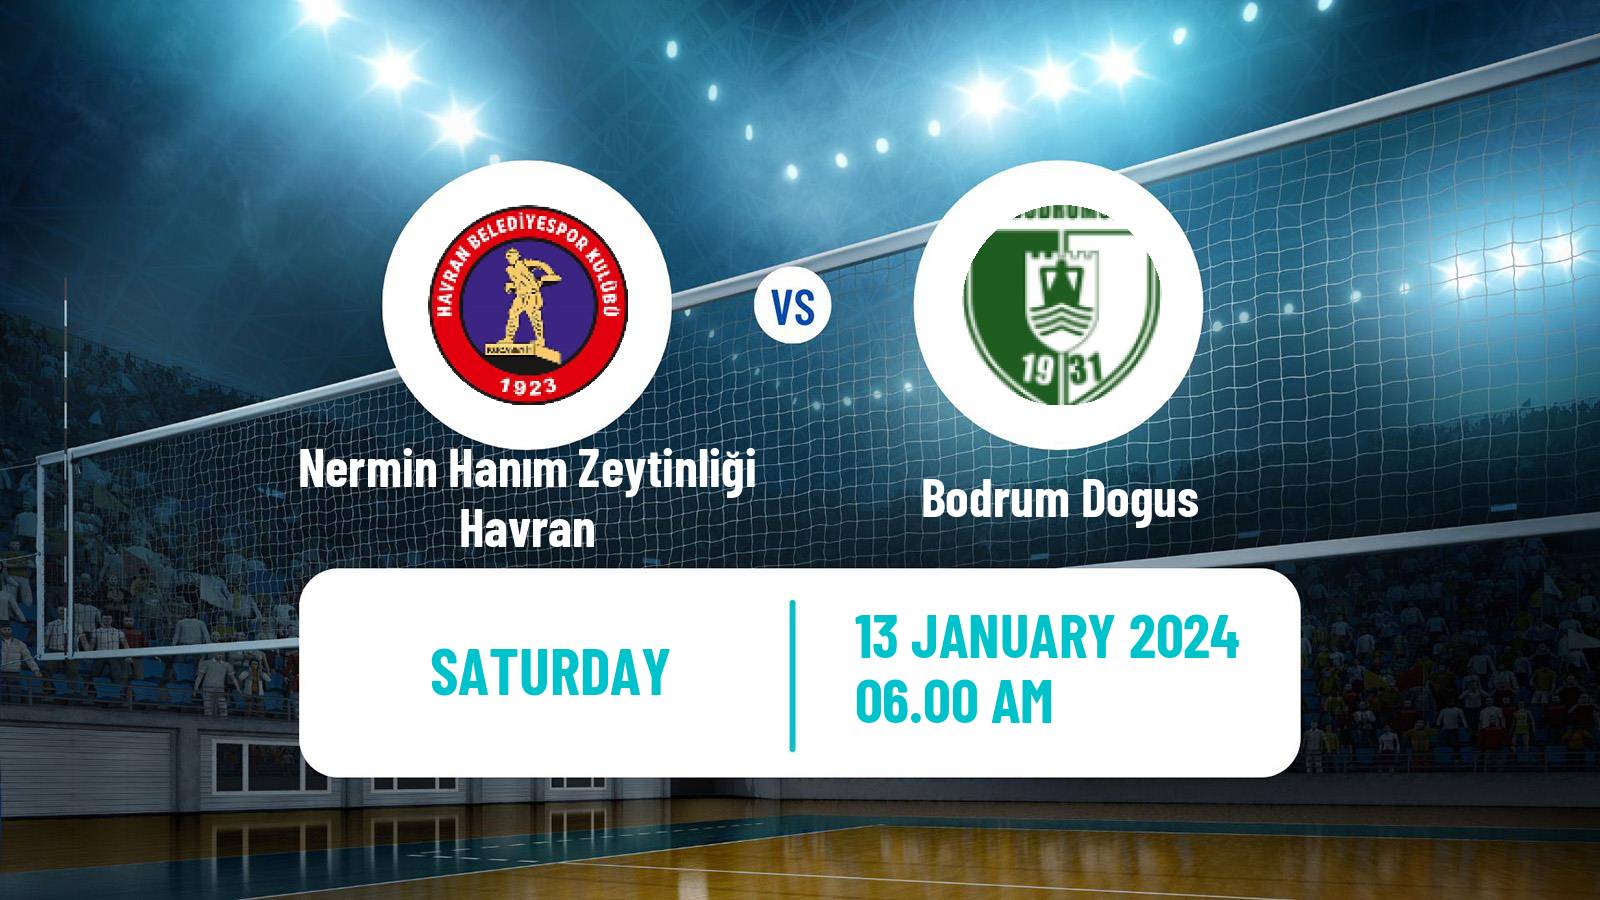 Volleyball Turkish 1 Ligi Volleyball Women Nermin Hanım Zeytinliği Havran - Bodrum Dogus